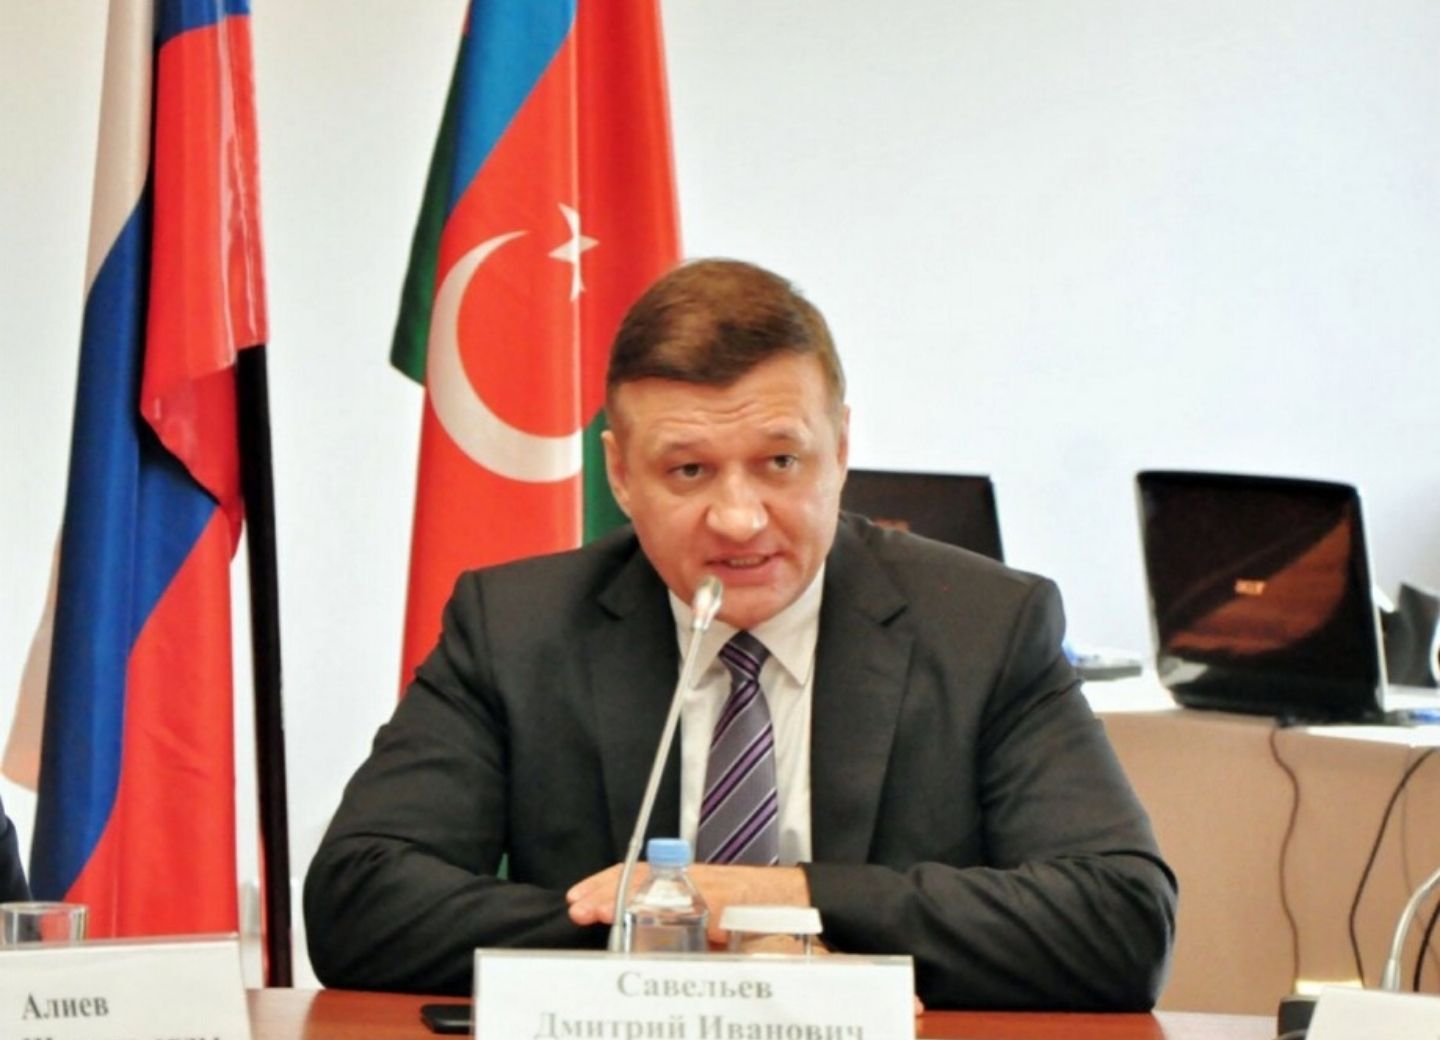 Дмитрий Савельев: Политическое взаимопонимание России и Азербайджана растет